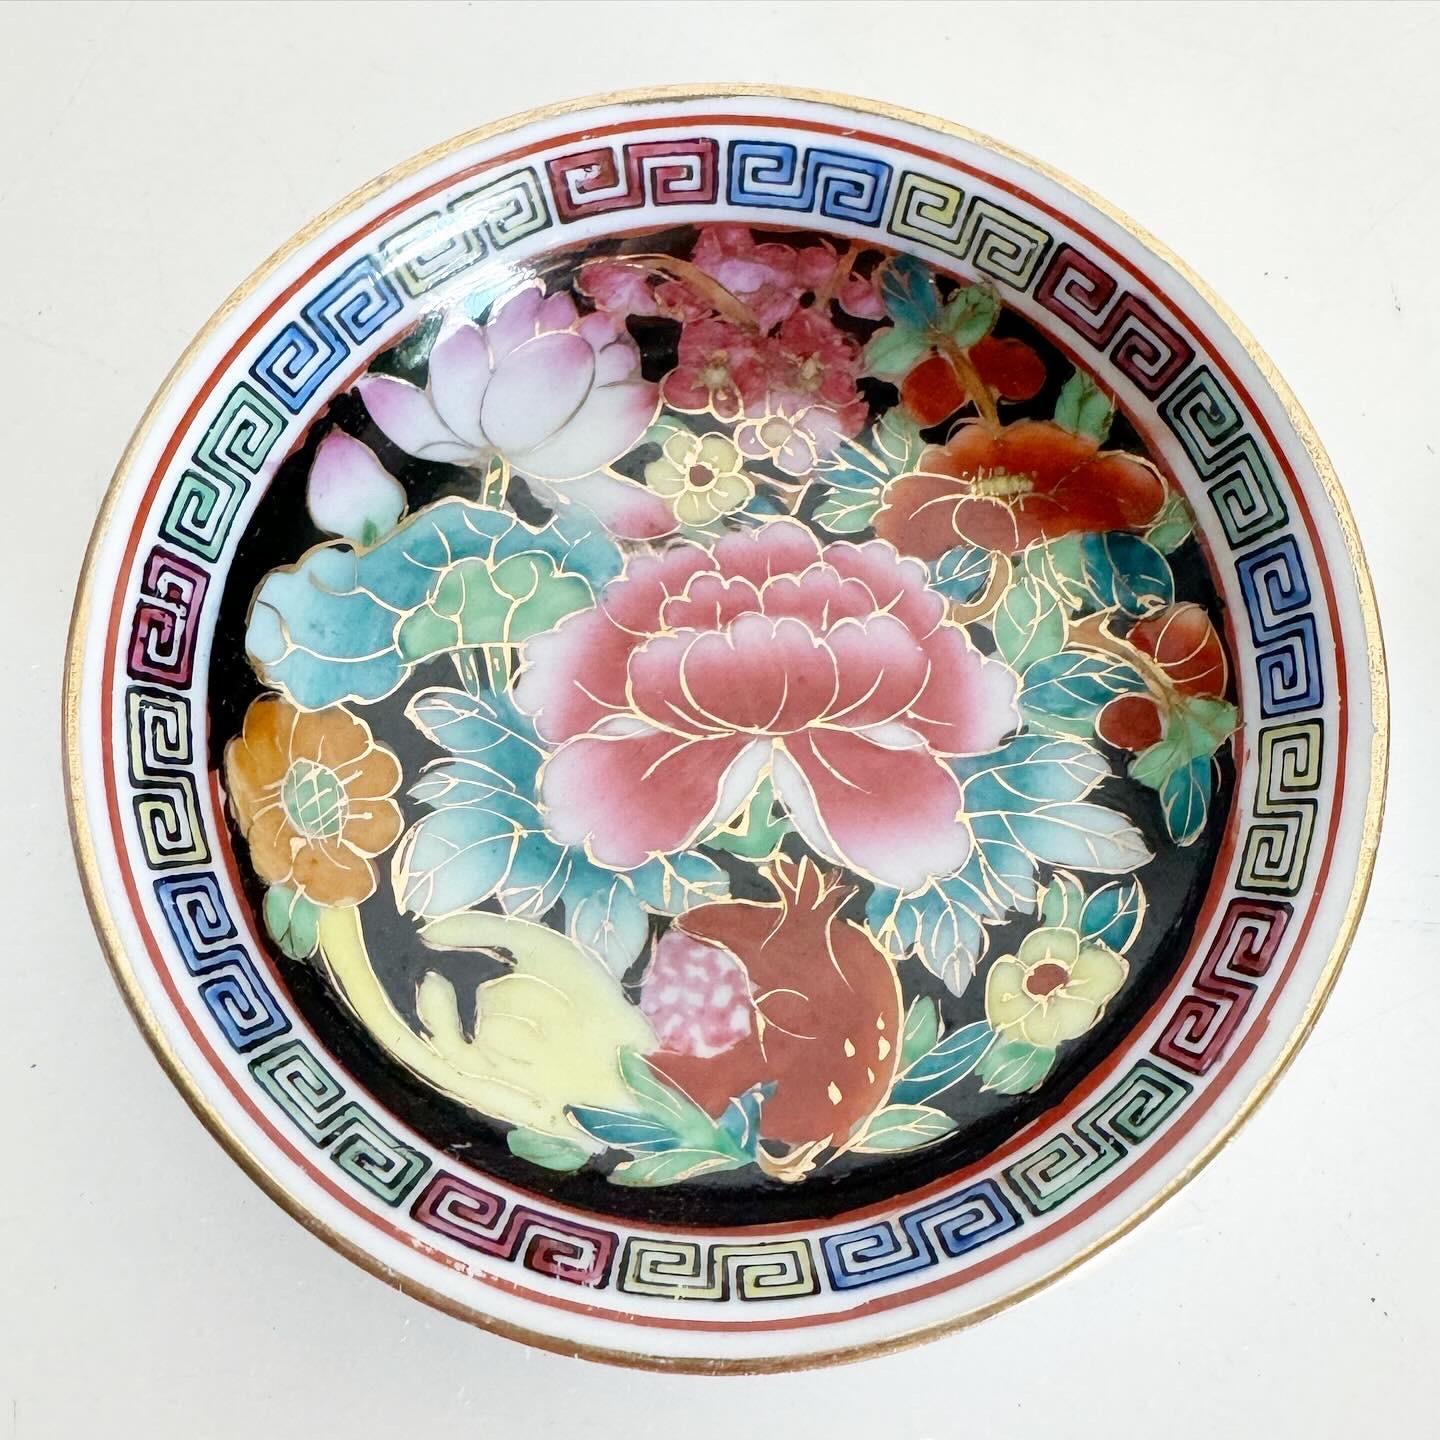 Découvrez l'élégance des petites assiettes/bols chinois anciens peints à la main, une paire qui met en valeur la beauté de l'art traditionnel chinois. Dessinées de manière complexe avec des motifs floraux, des symboles culturels ou des paysages, ces